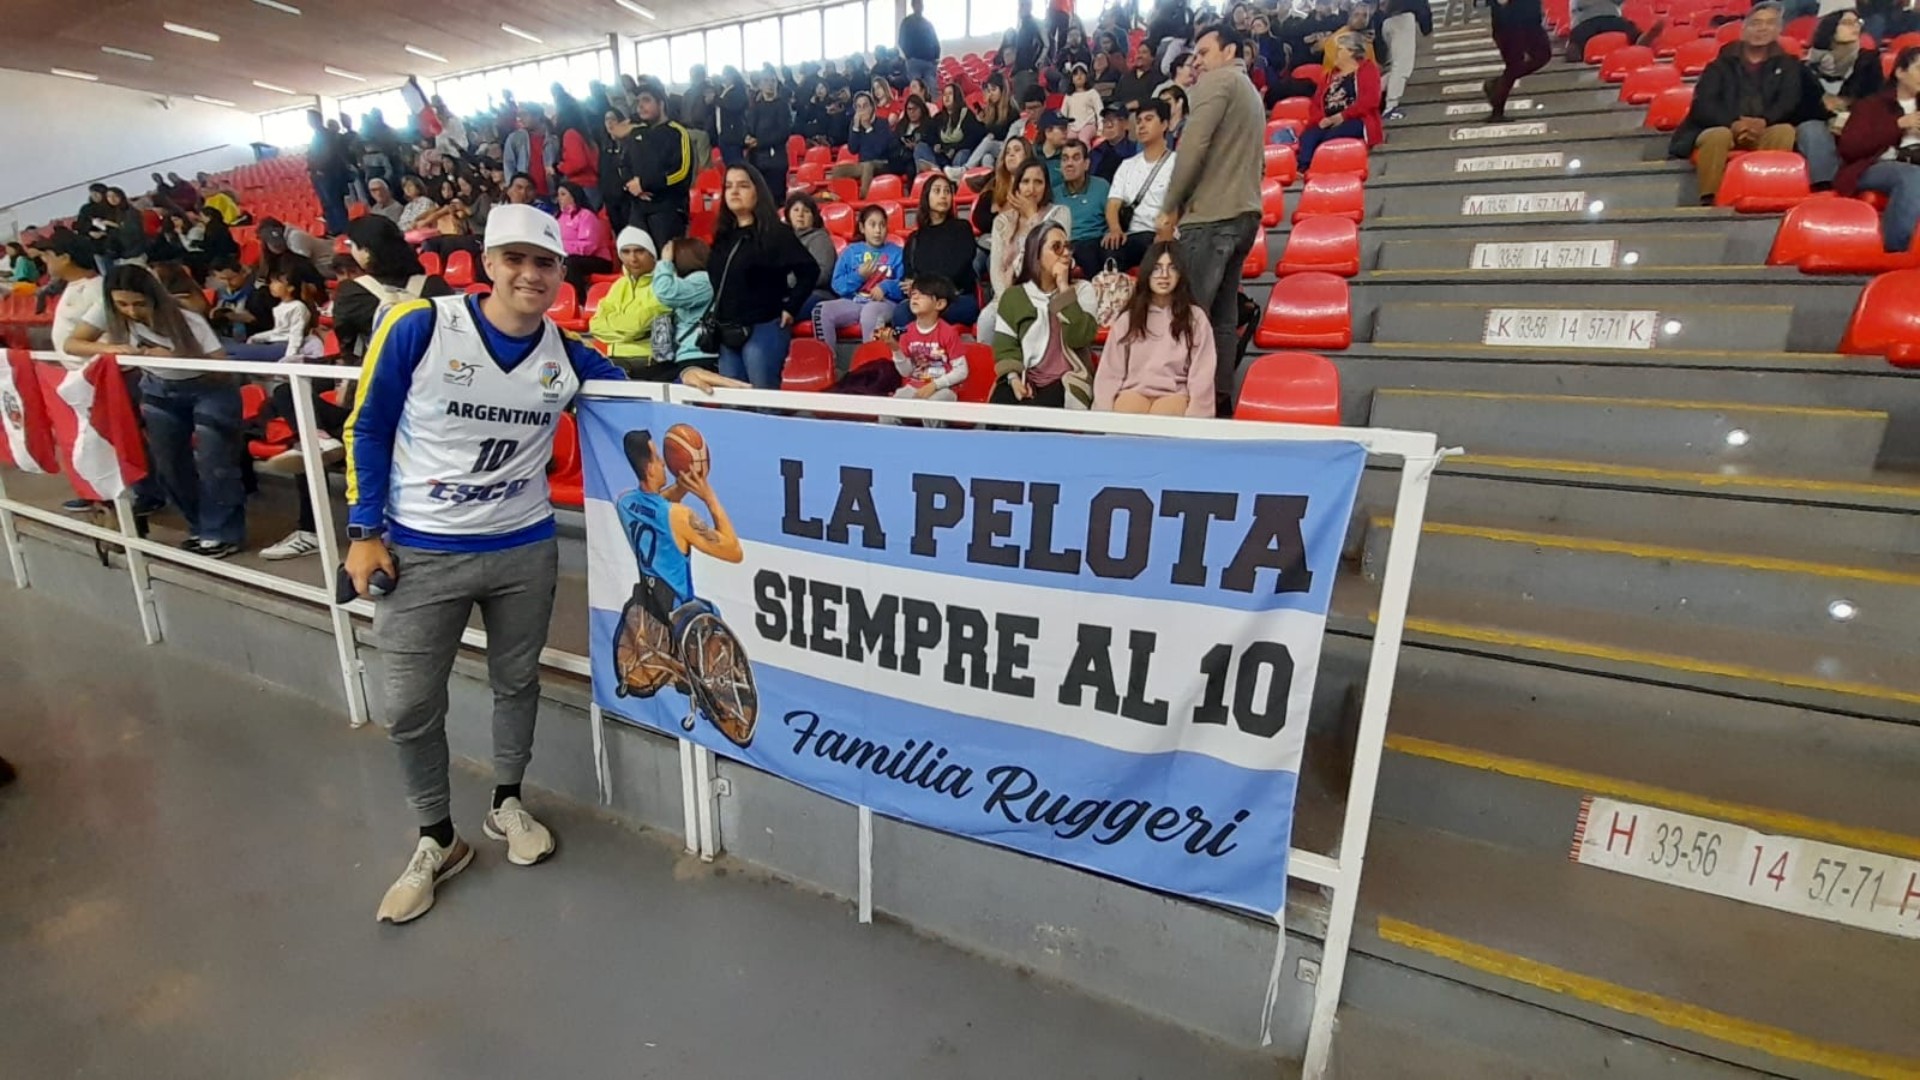 “La pelota siempre al 10”: Maxi Ruggeri, el crack de la selección argentina de básquetbol en silla de ruedas